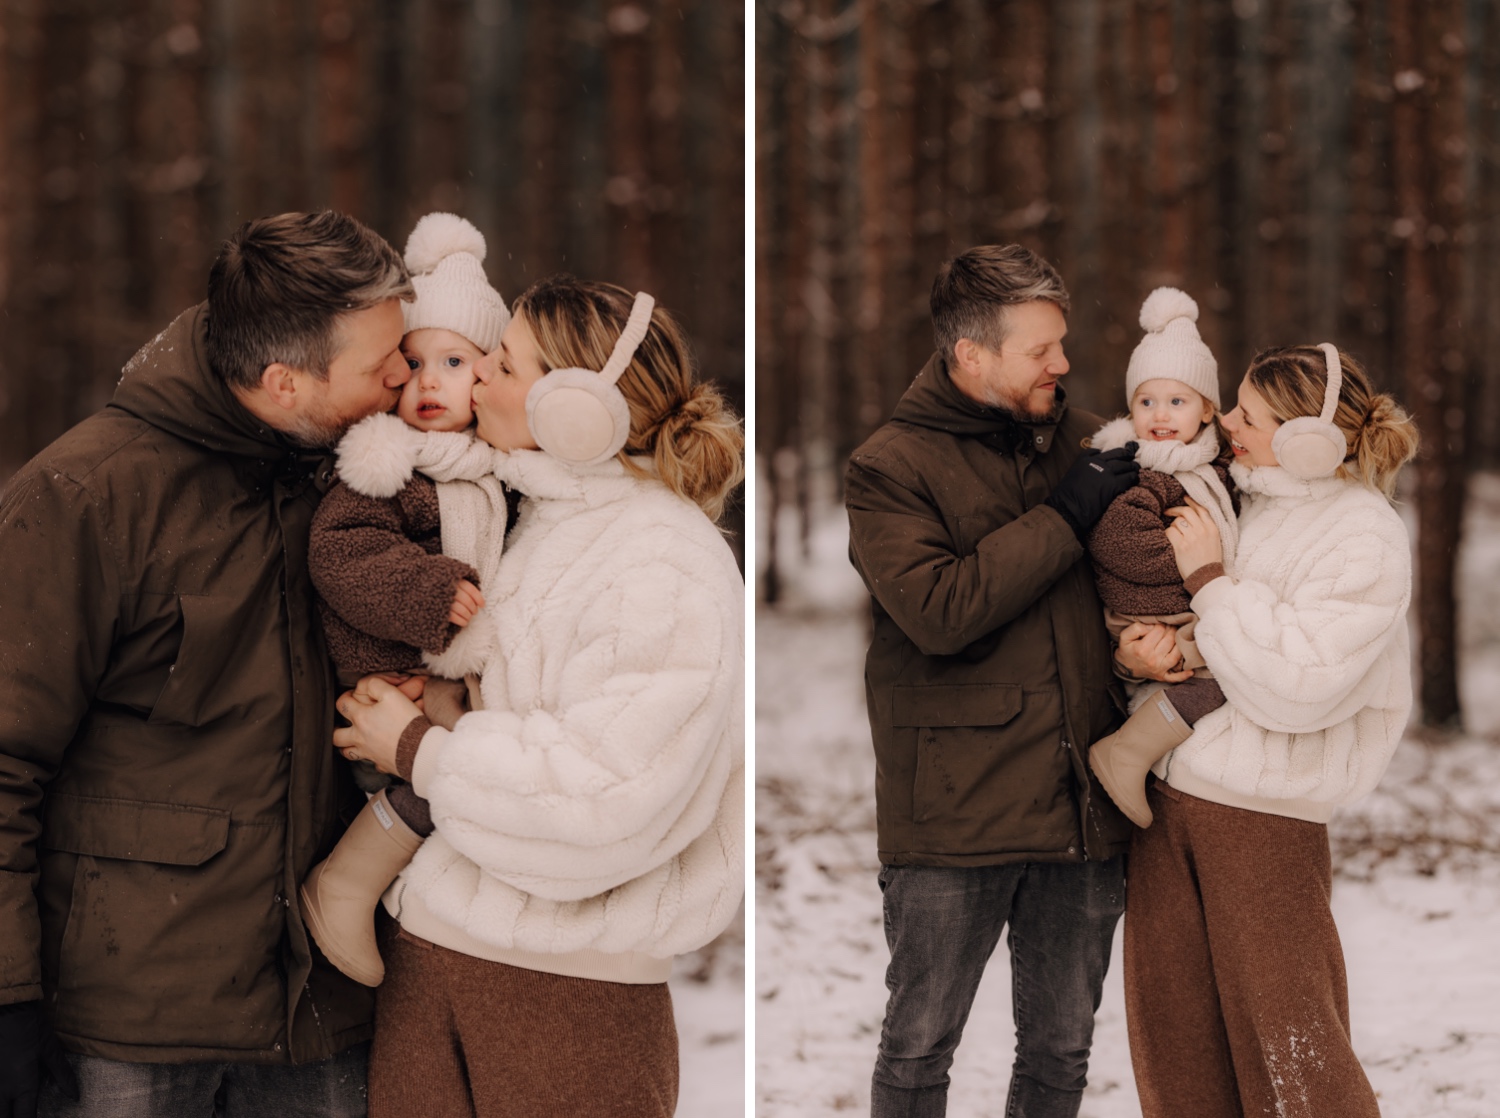 ouders geven hun dochtertje een kus in de sneeuw